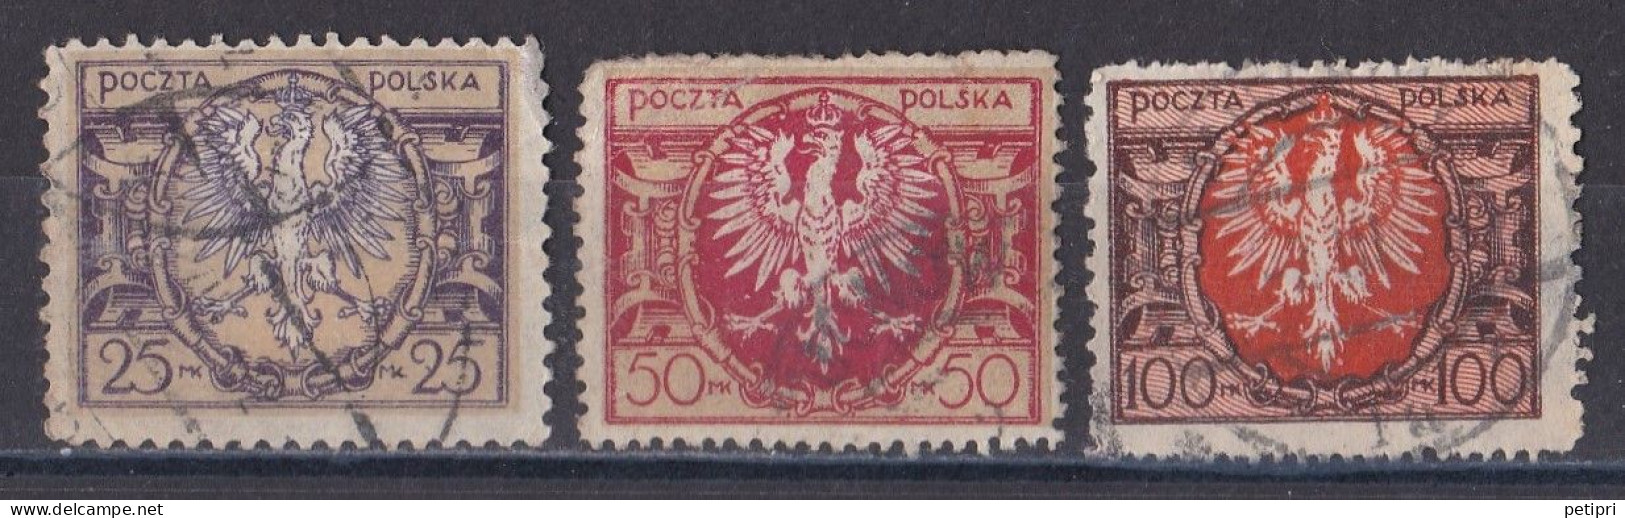 Pologne - République 1919  -  1939   Y & T N °  227   228   229  Oblitérés - Gebraucht